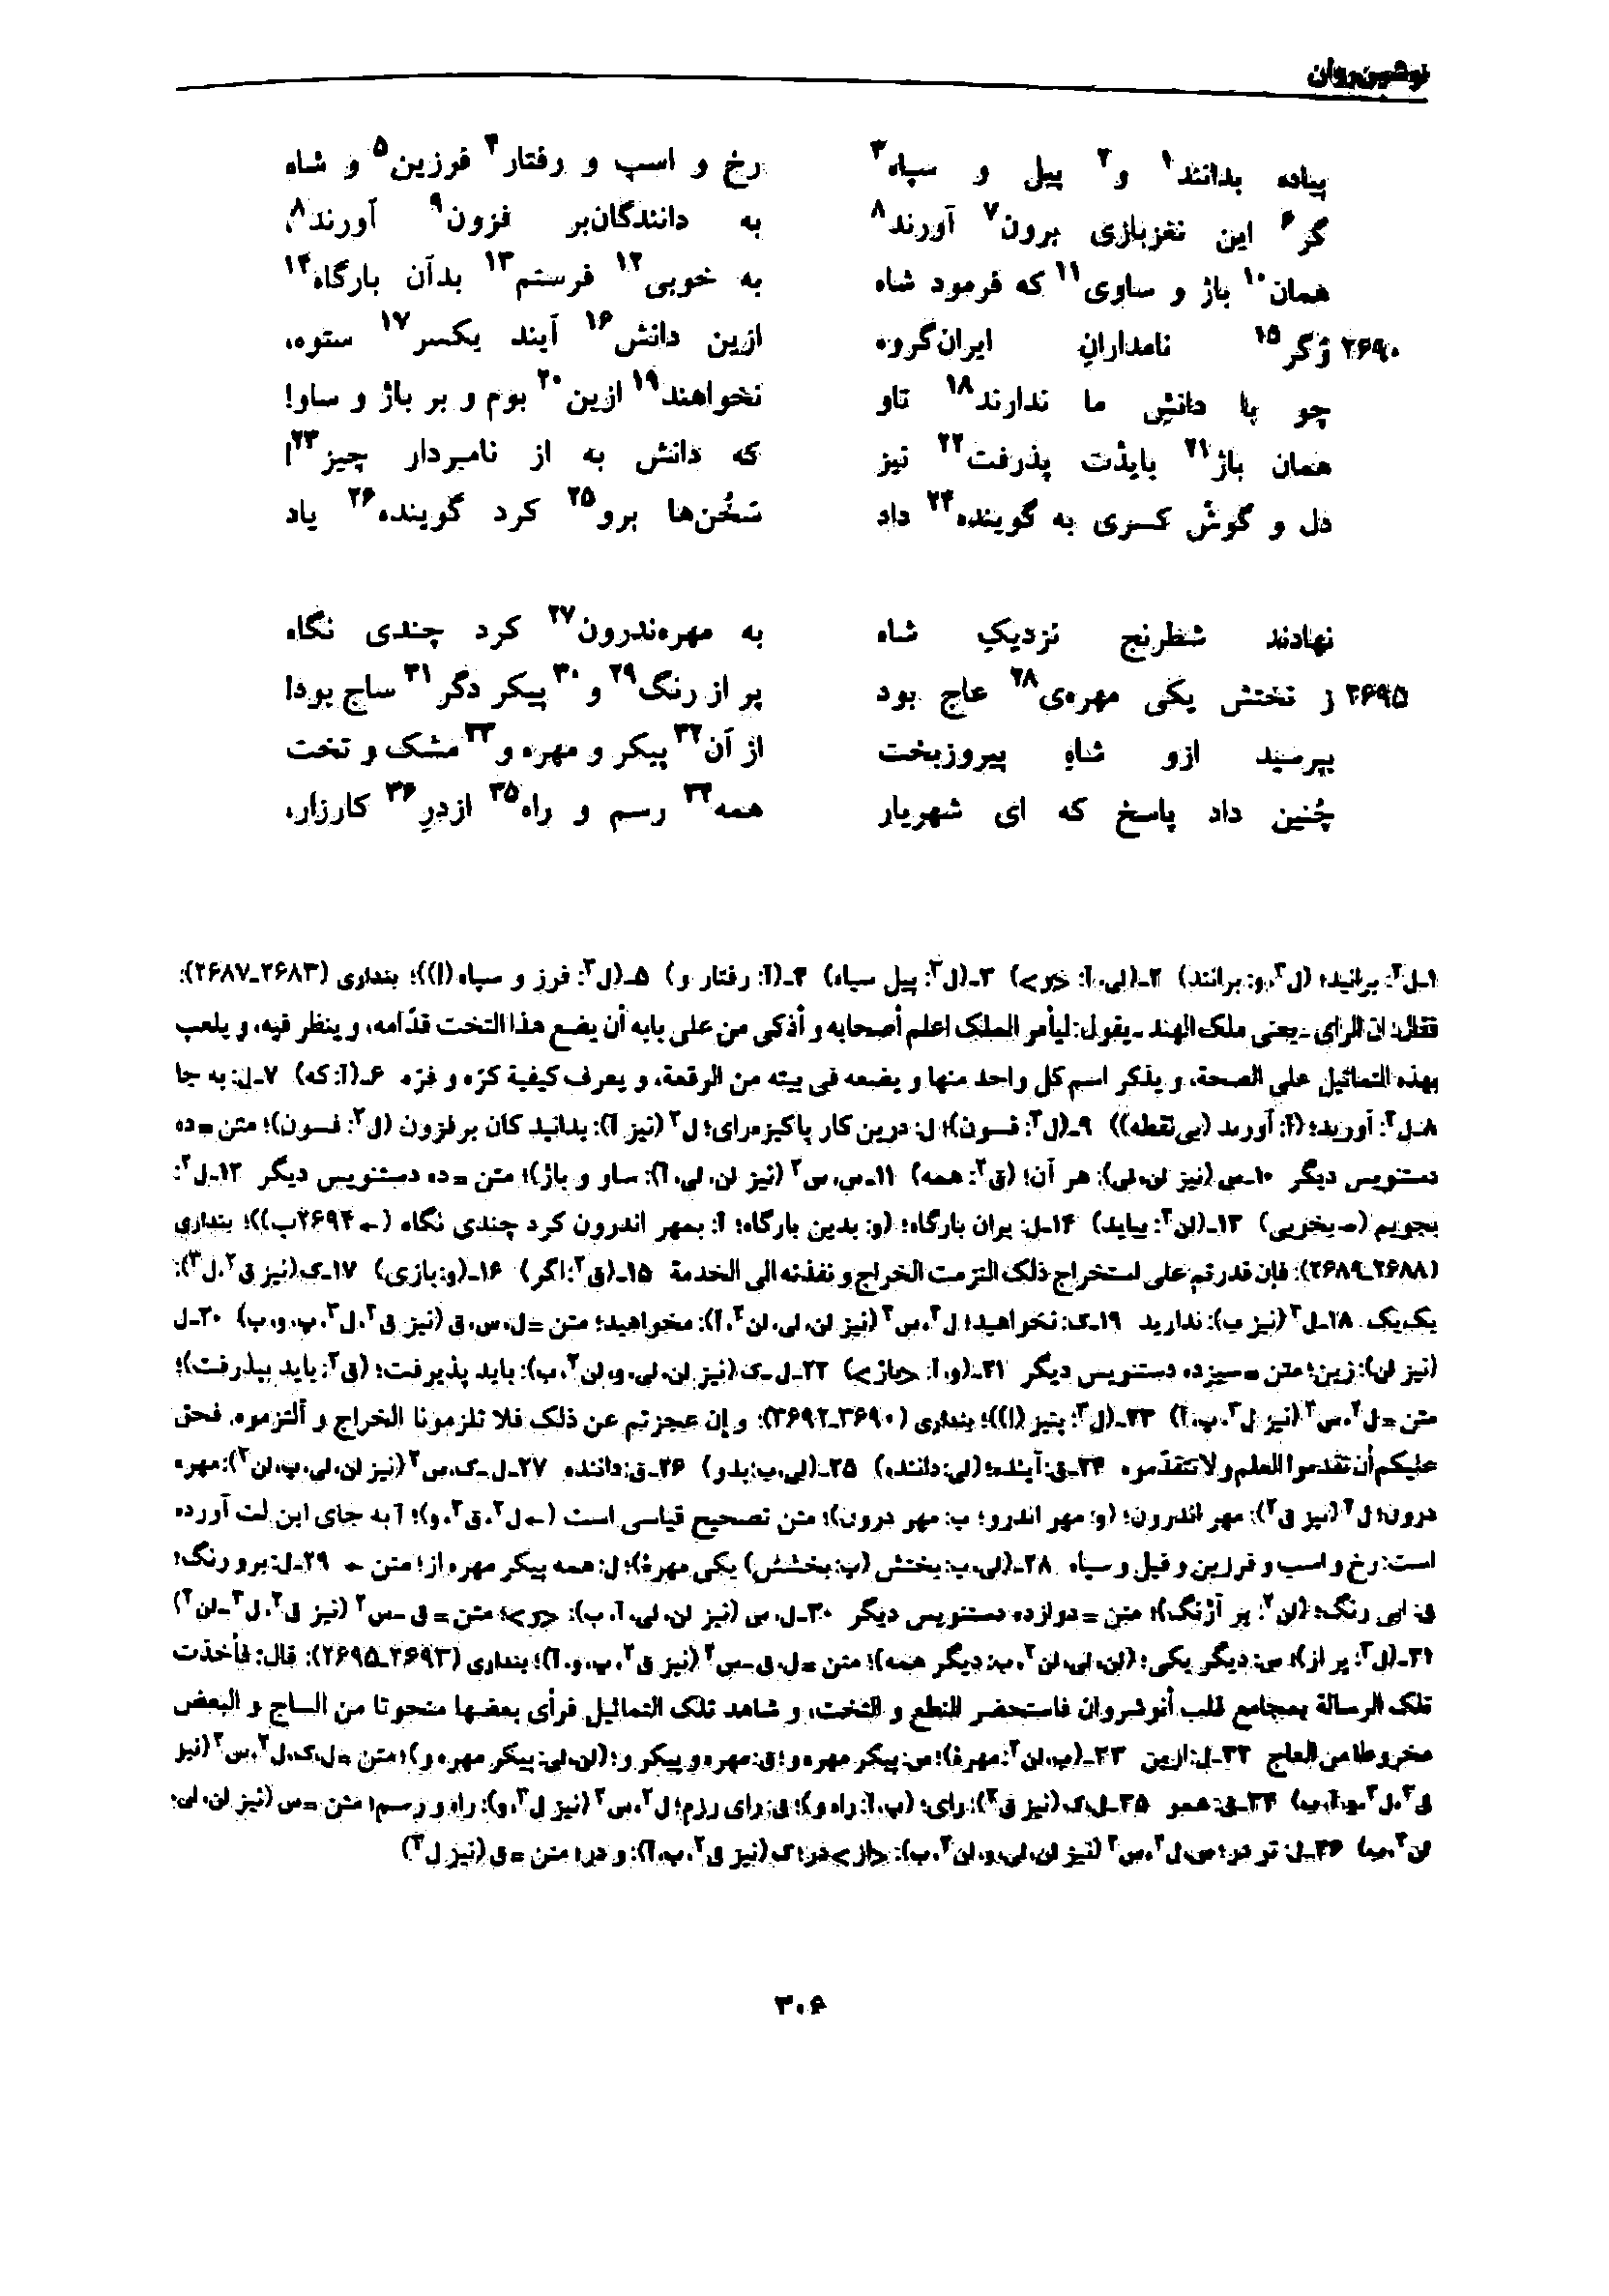 vol. 7, p. 306